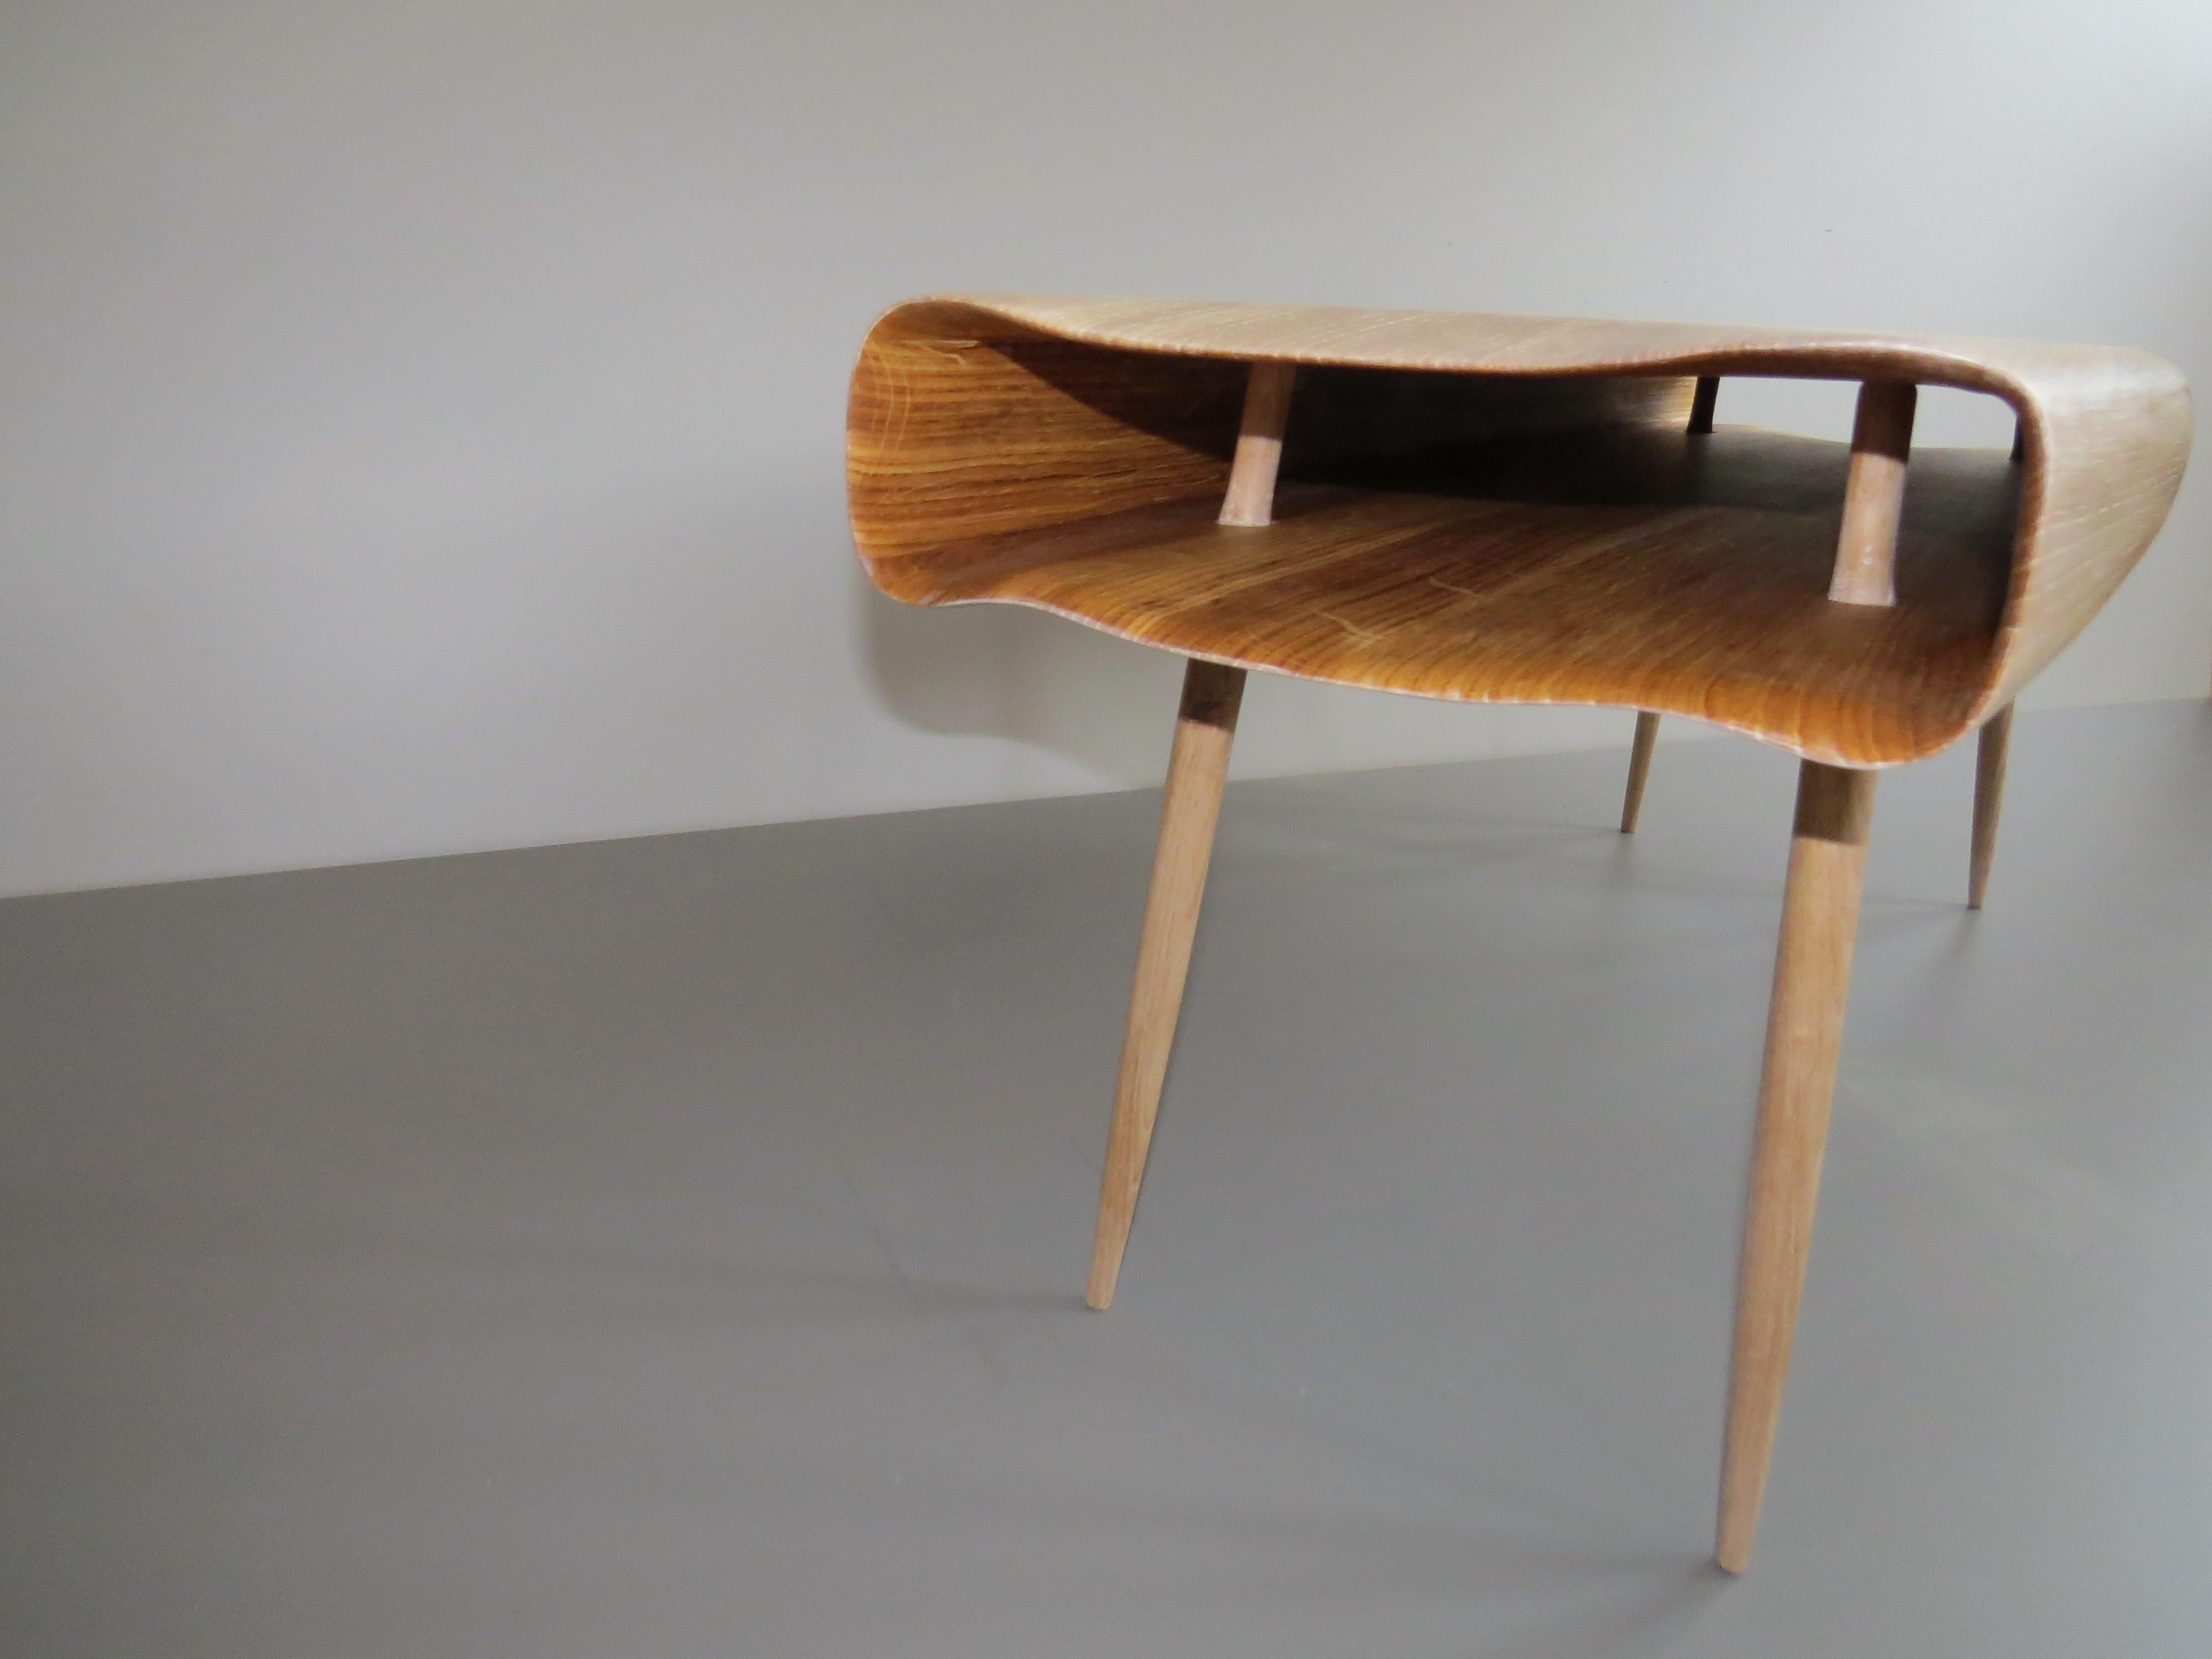 Les meubles du designer allemand Eckehard Weimann semblent vivants.

Ici comme un banc : un corps creux en bois massif sert d'objet d'assise, il est organiquement délicatement travaillé -.
à la main, bien sûr !
L'objet semble de forme molle, mais a